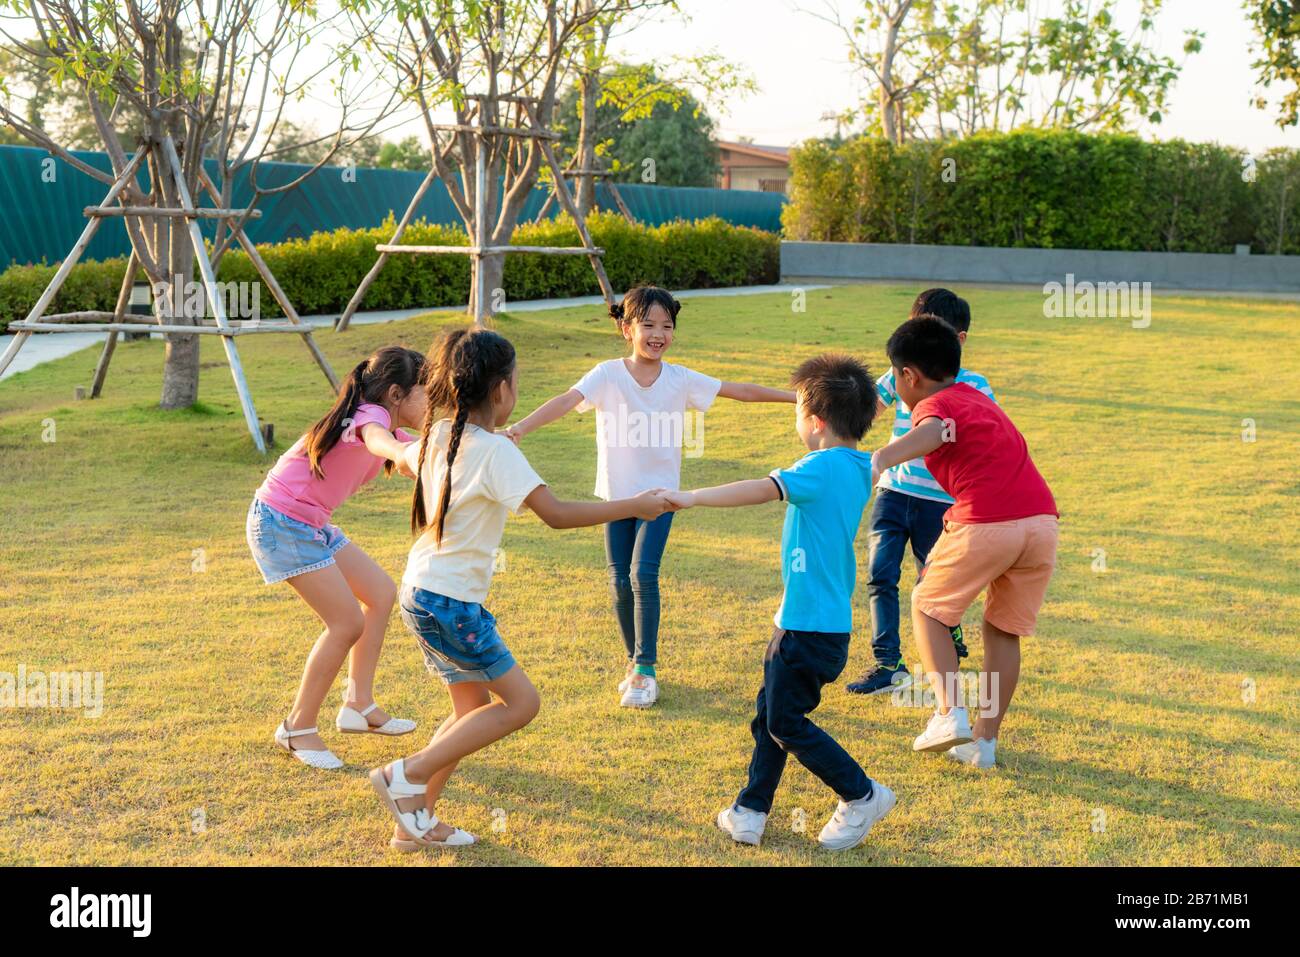 Un grand groupe d'heureux amis asiatiques souriants de jardin d'enfants qui tiennent les mains jouer et danser jouent à la roundelay et se tiennent en cercle dans le parc sur le g Banque D'Images